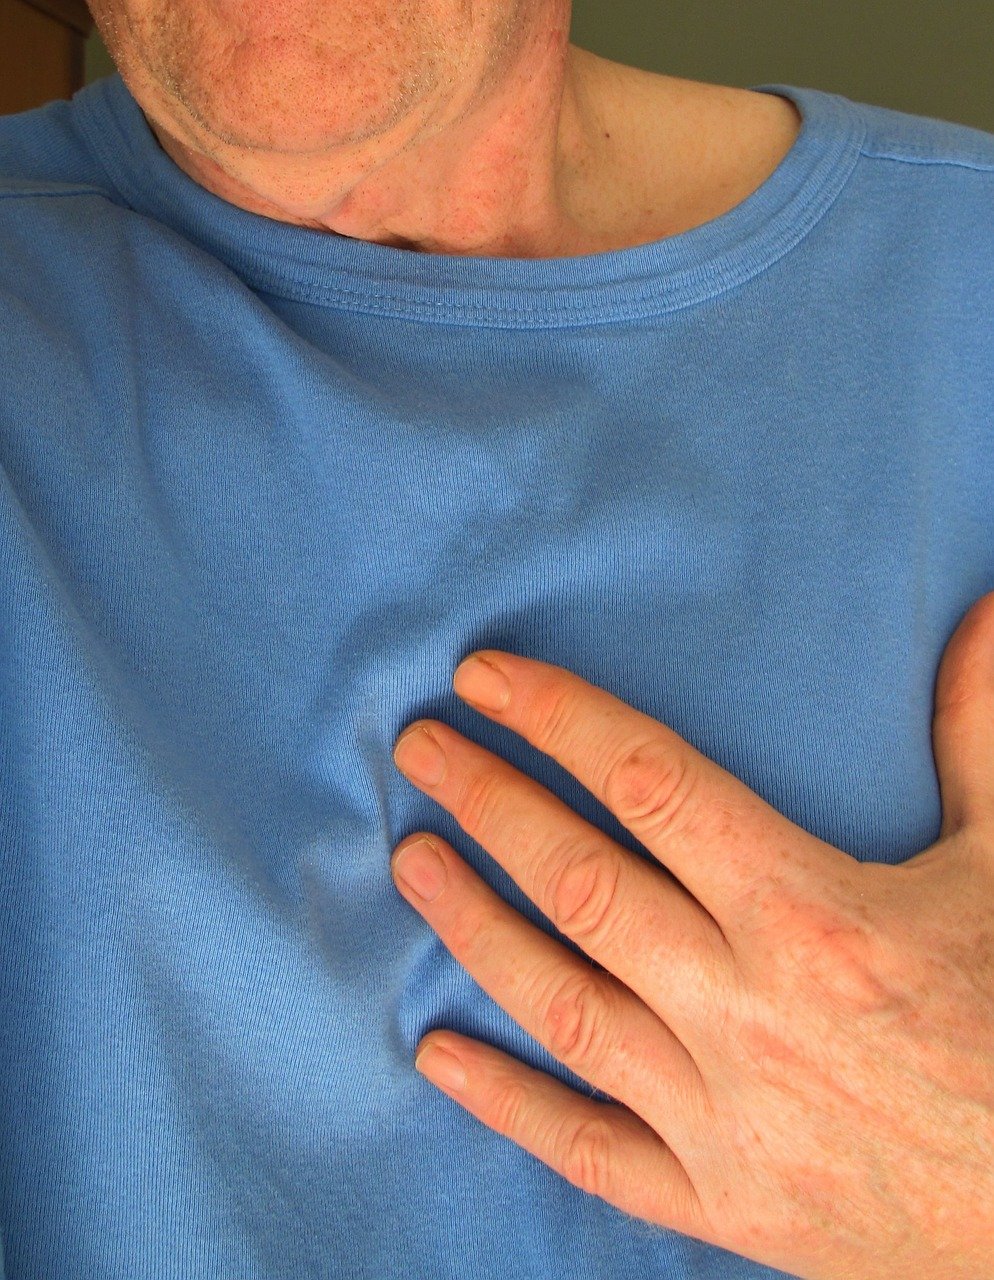 2021 ESC/EACTS指南：瓣膜性心脏病的管理